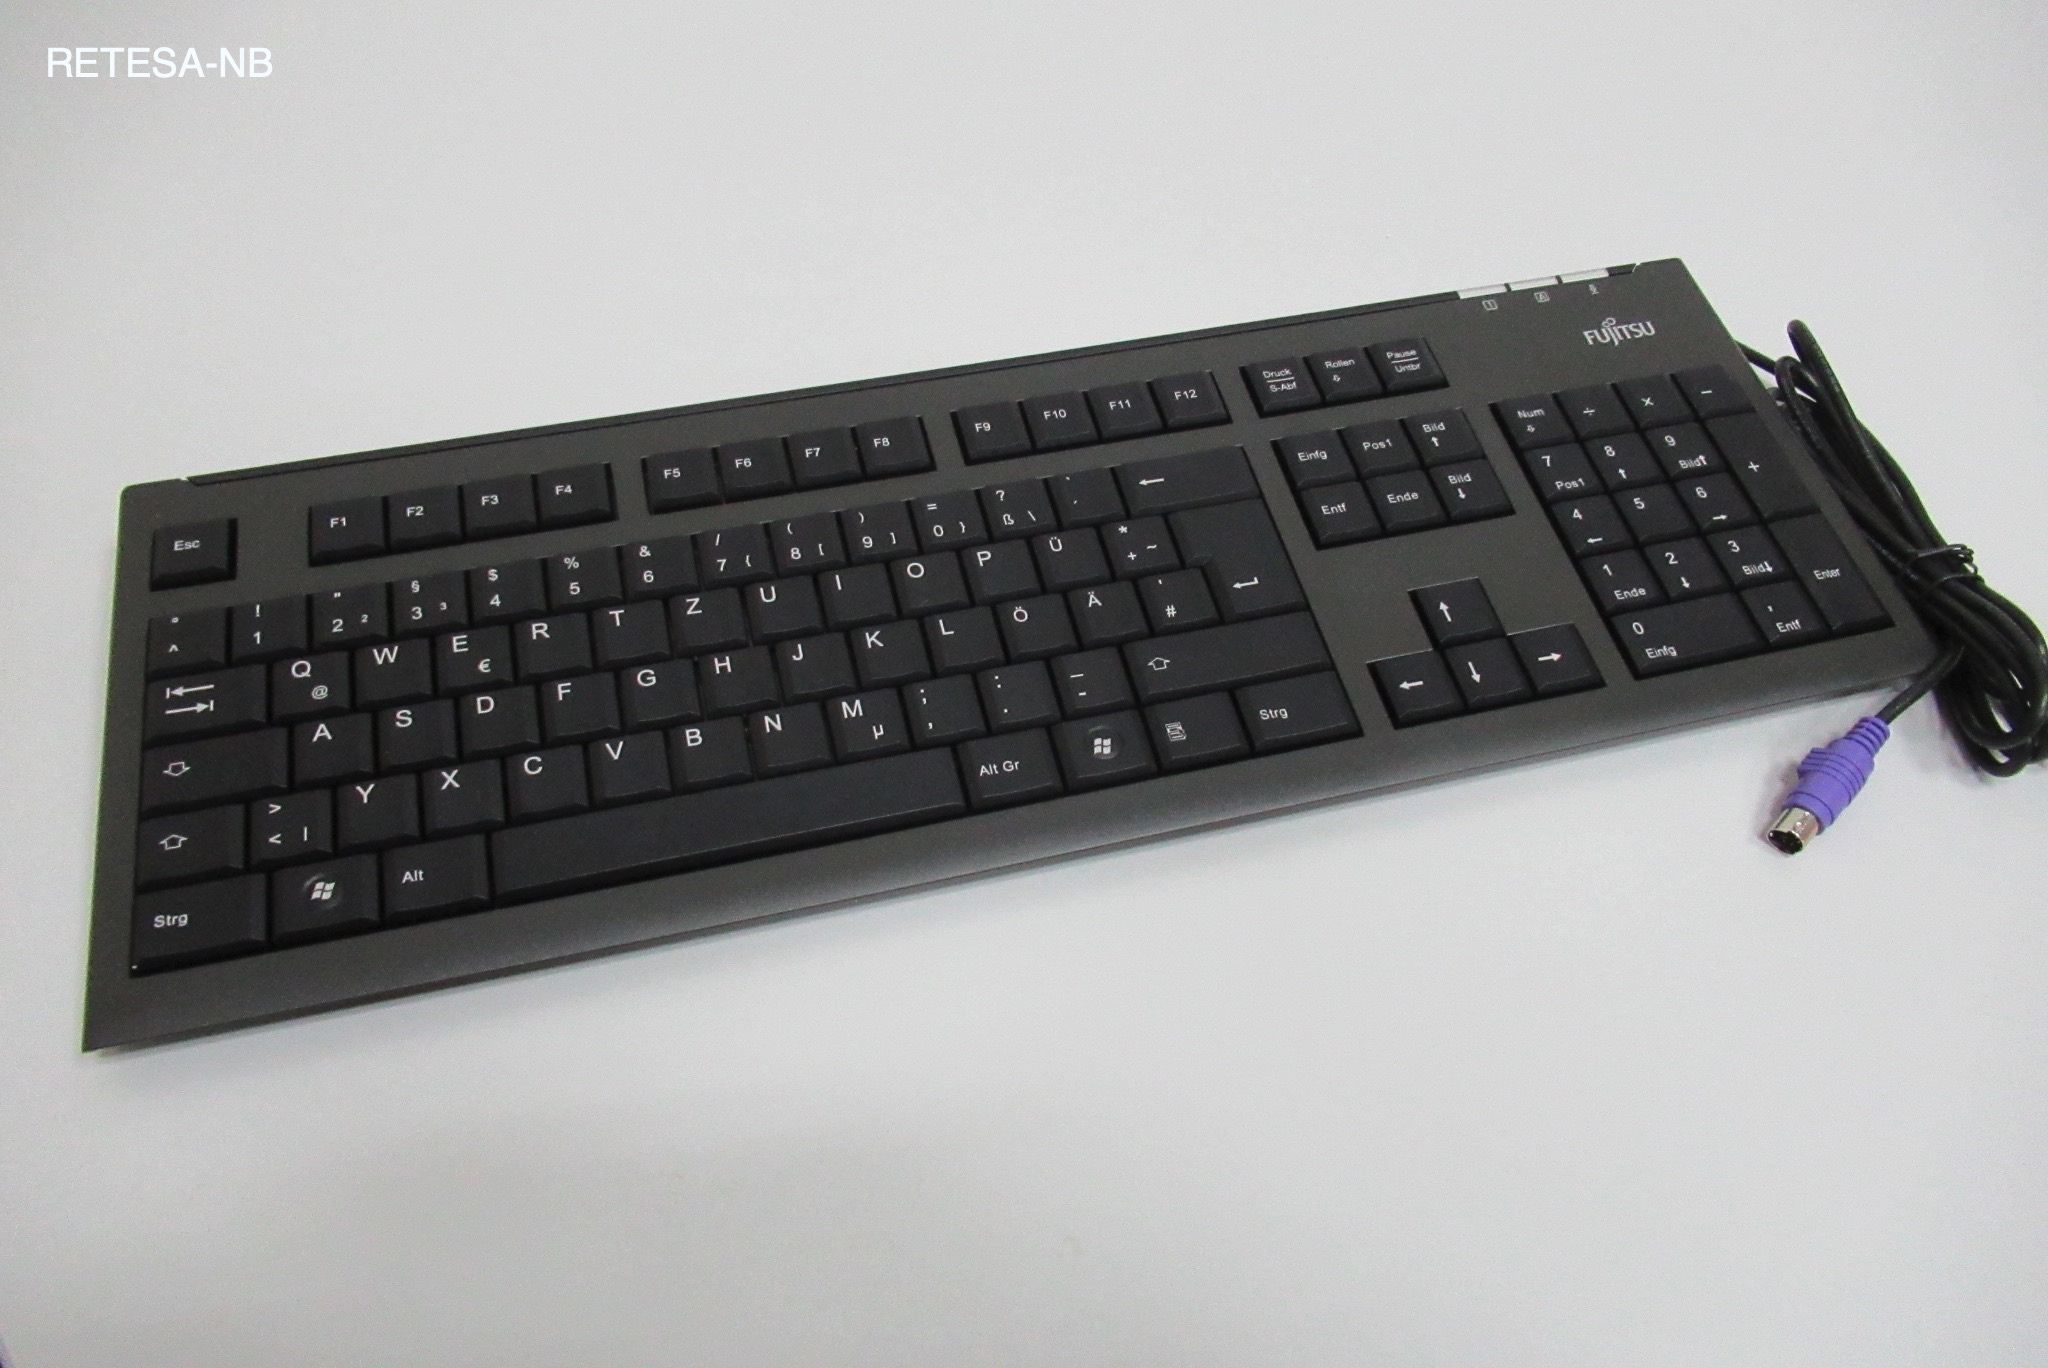 PS/2-Tastatur FUJITSU KB400 D Standard, schwarz, FTS S26381-K551-L420